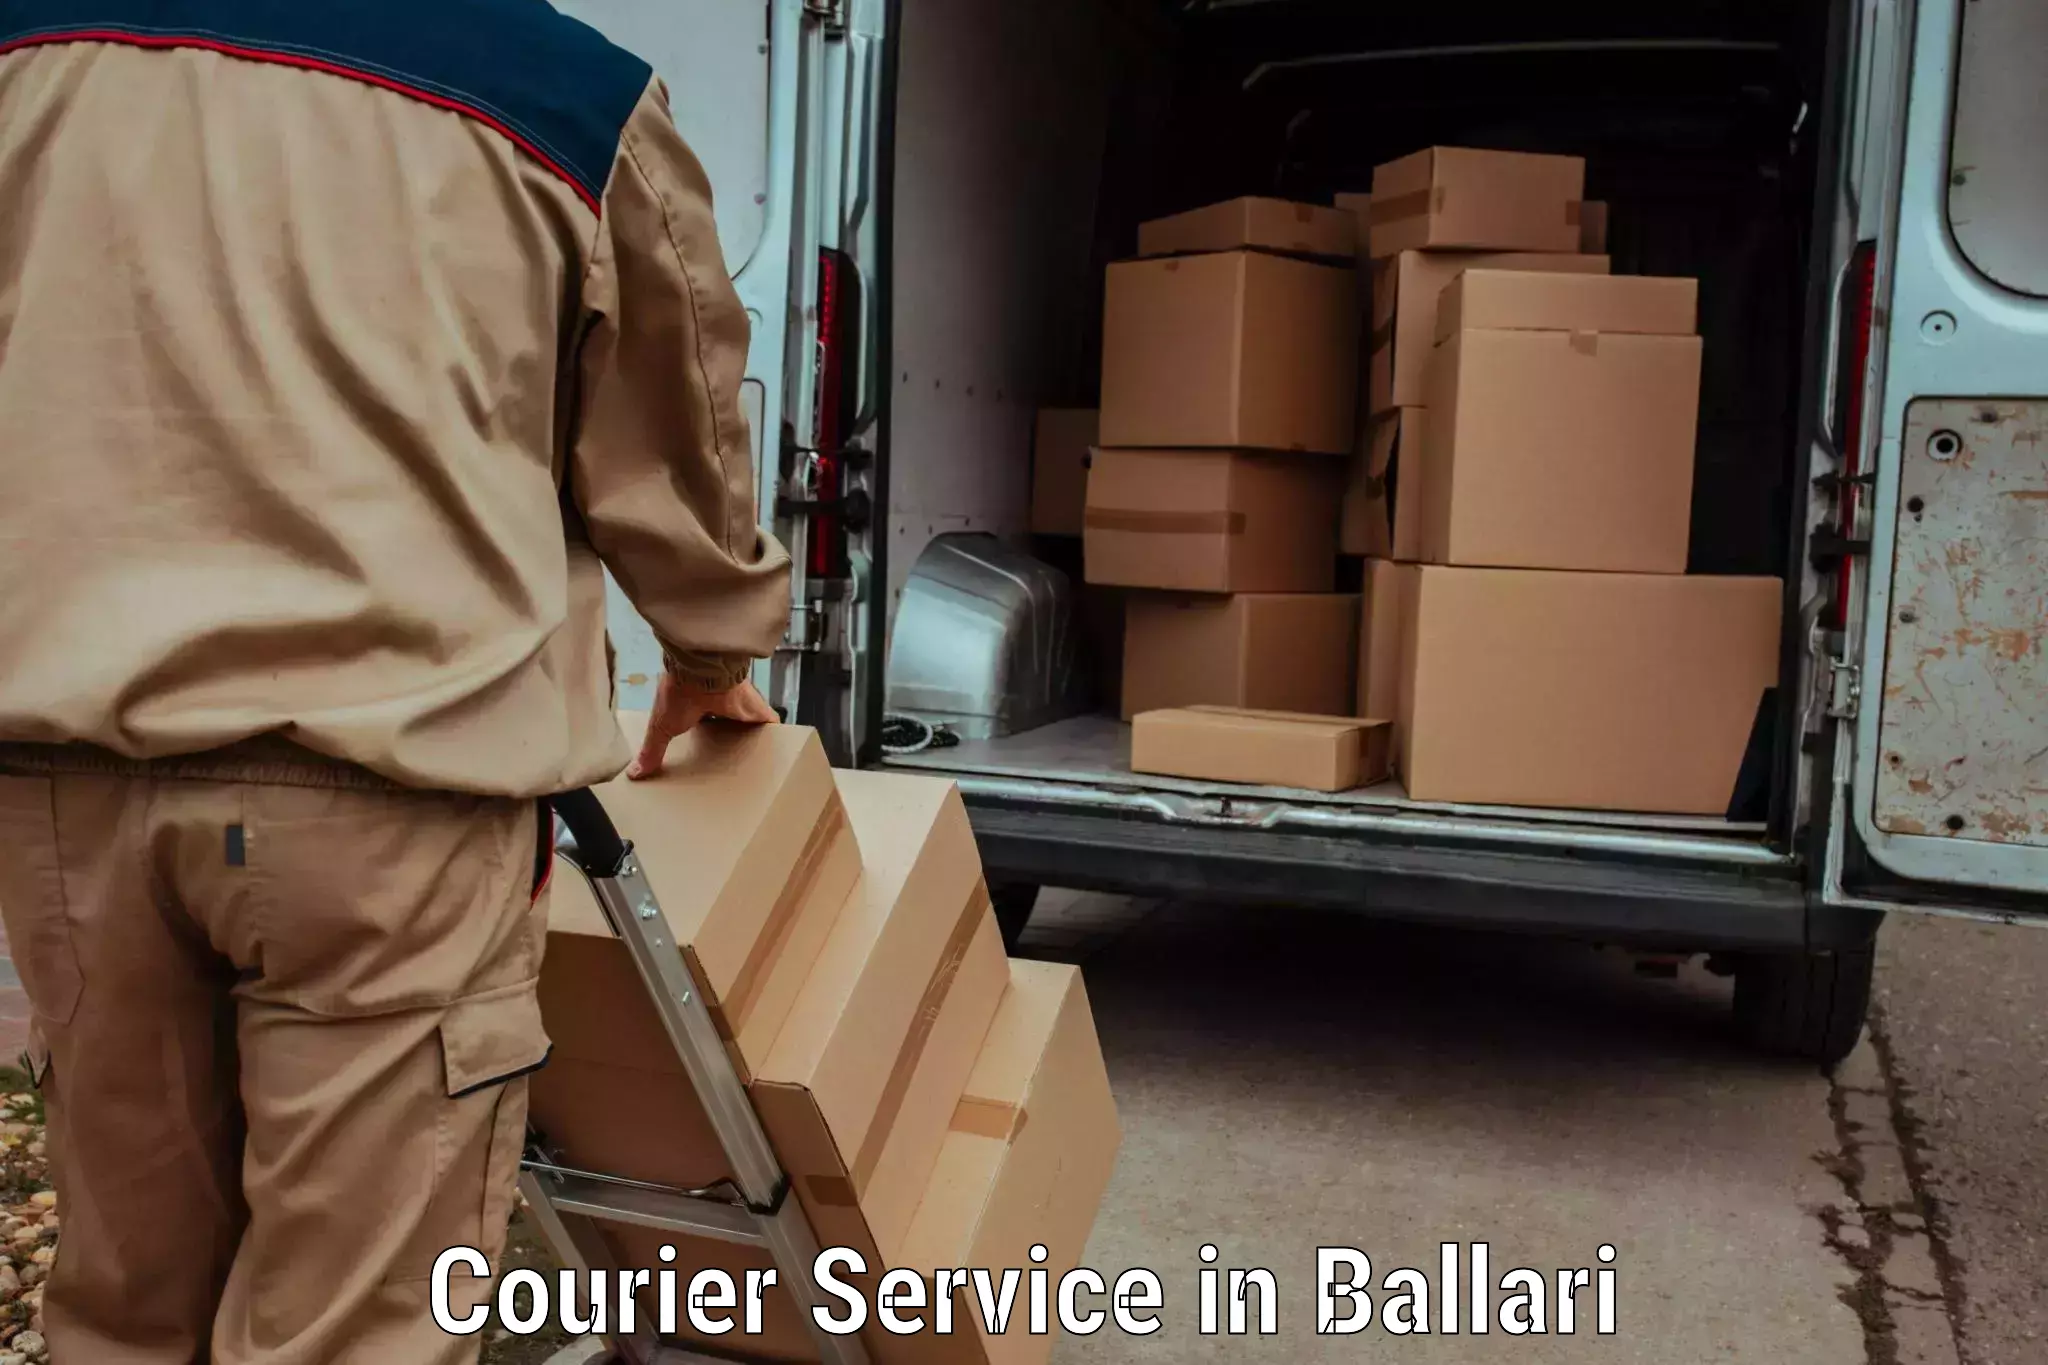 Overnight delivery services in Ballari